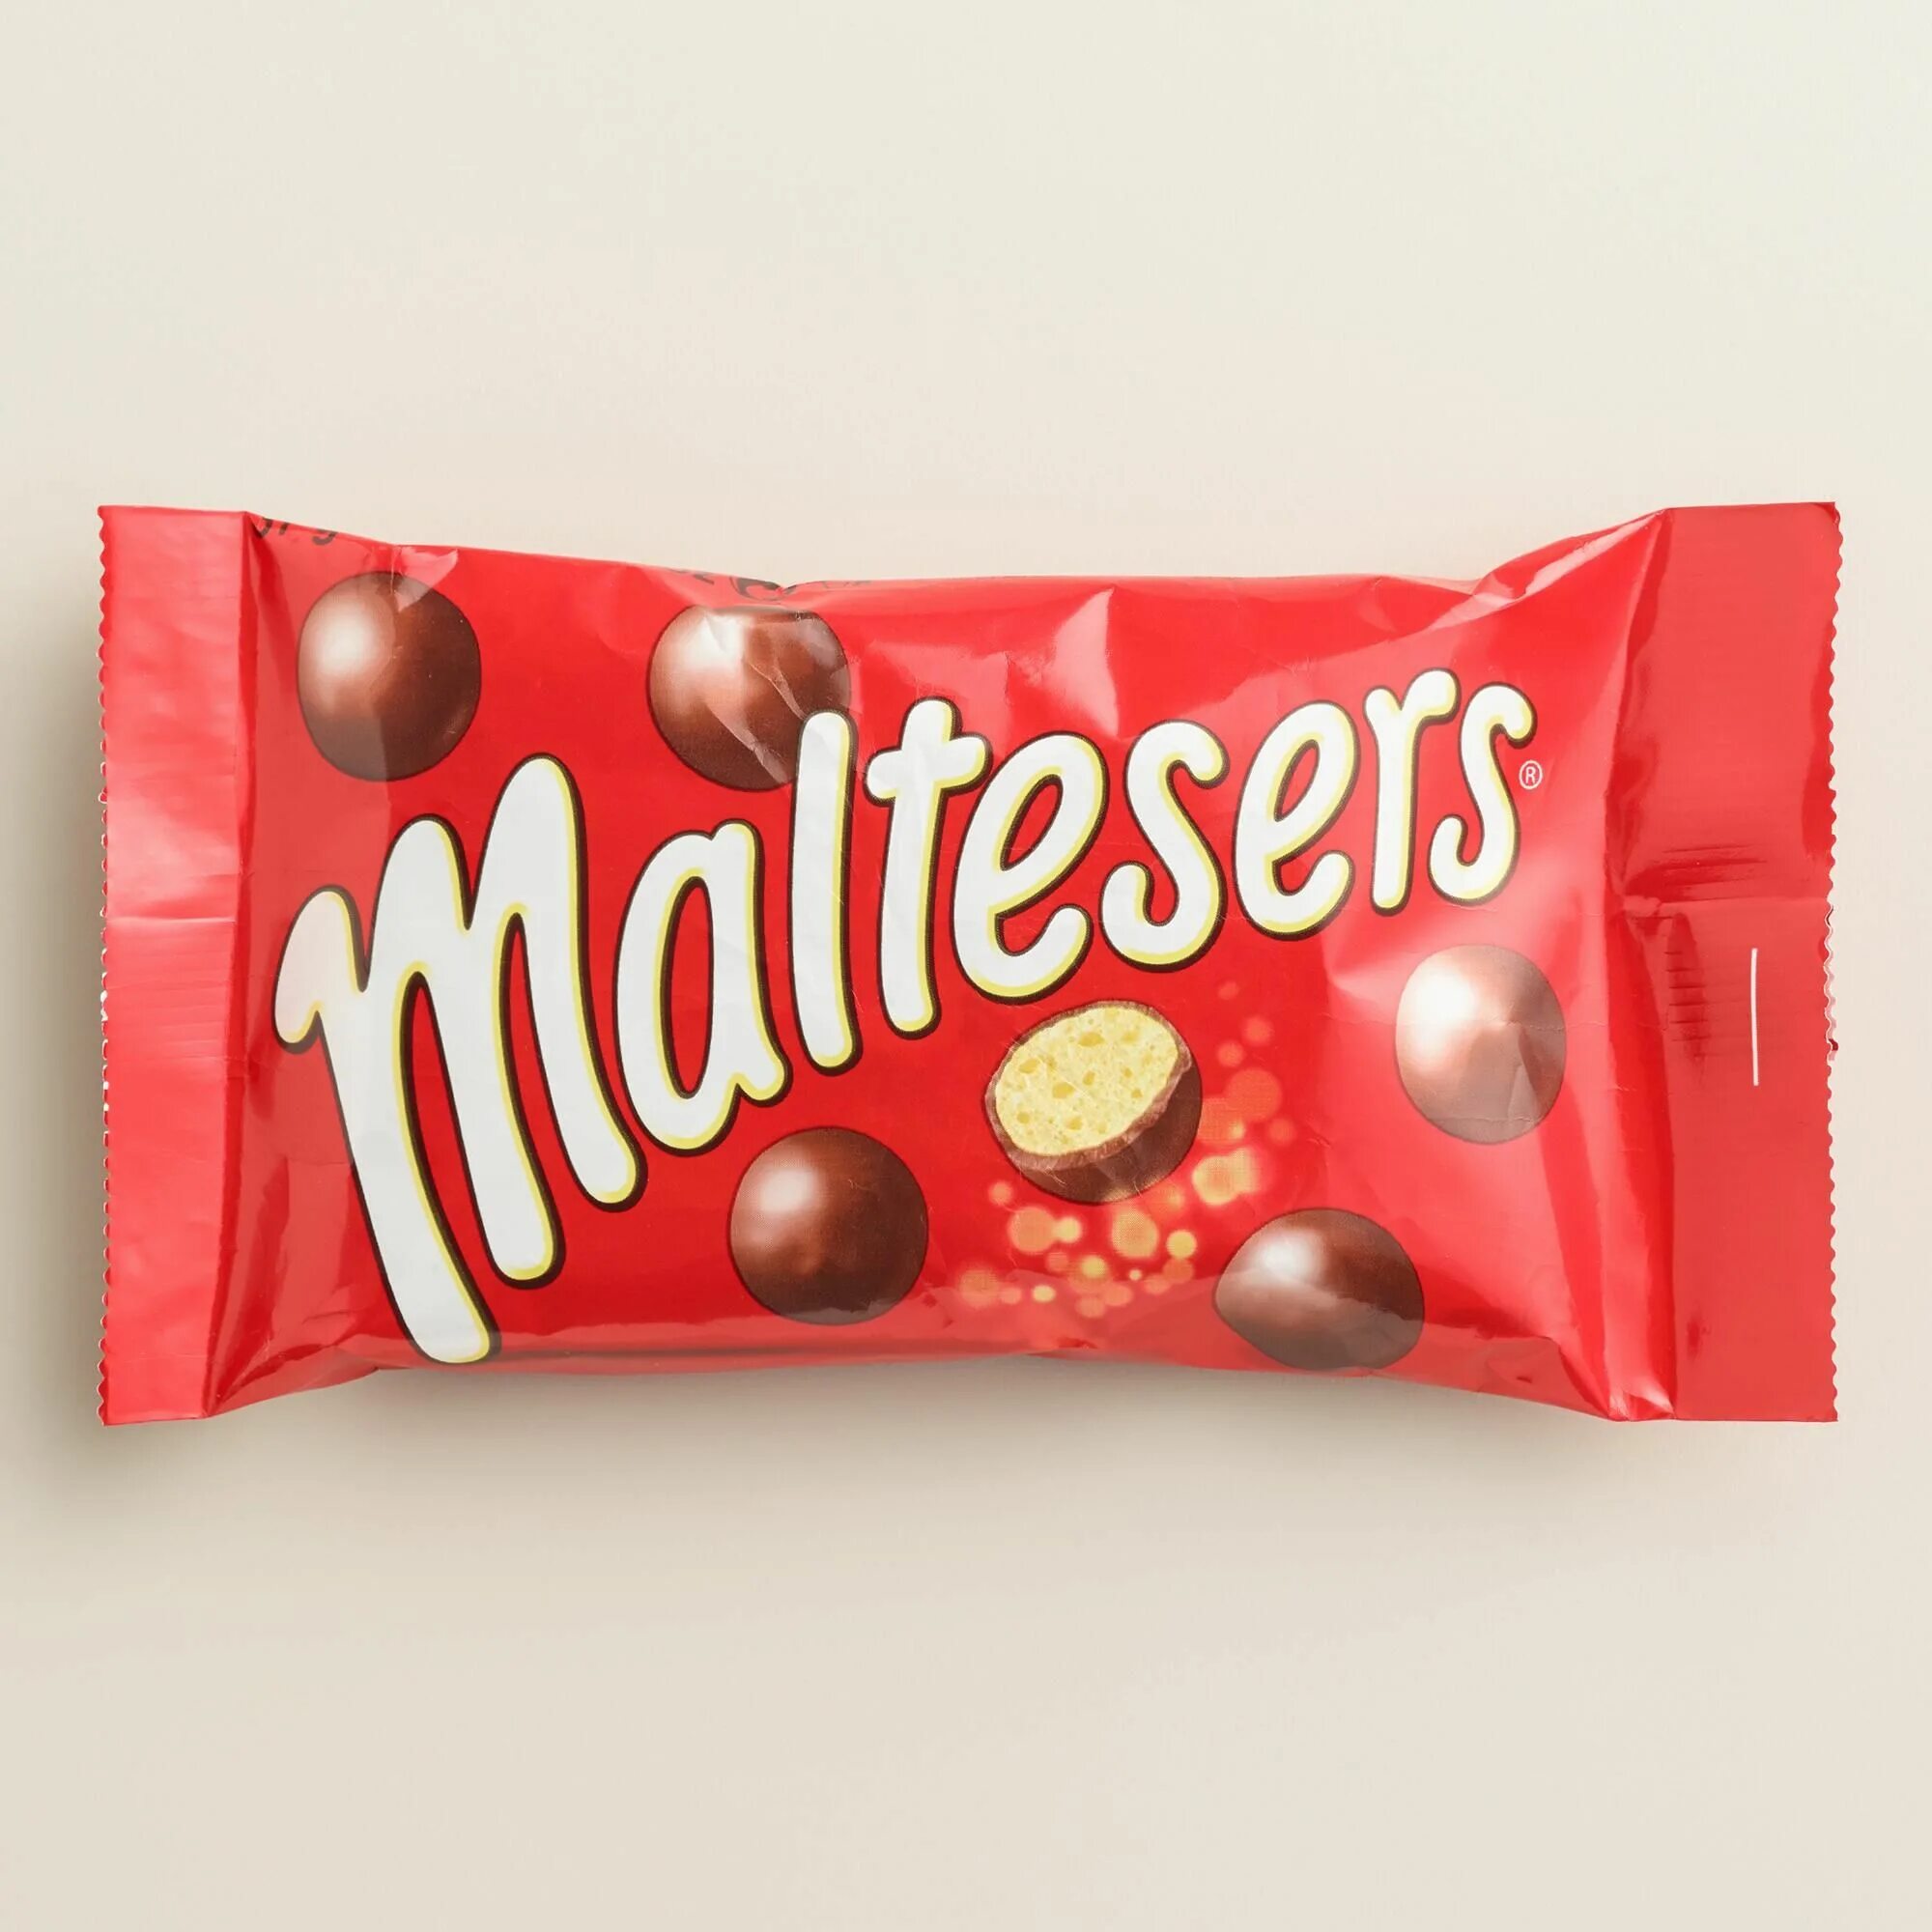 Maltesers шарики купить. Мальтизерс конфеты. Драже Maltesers. Конфеты шоколадные шарики Мальтизерс. Maltesers шоколадные шарики 37 гр.